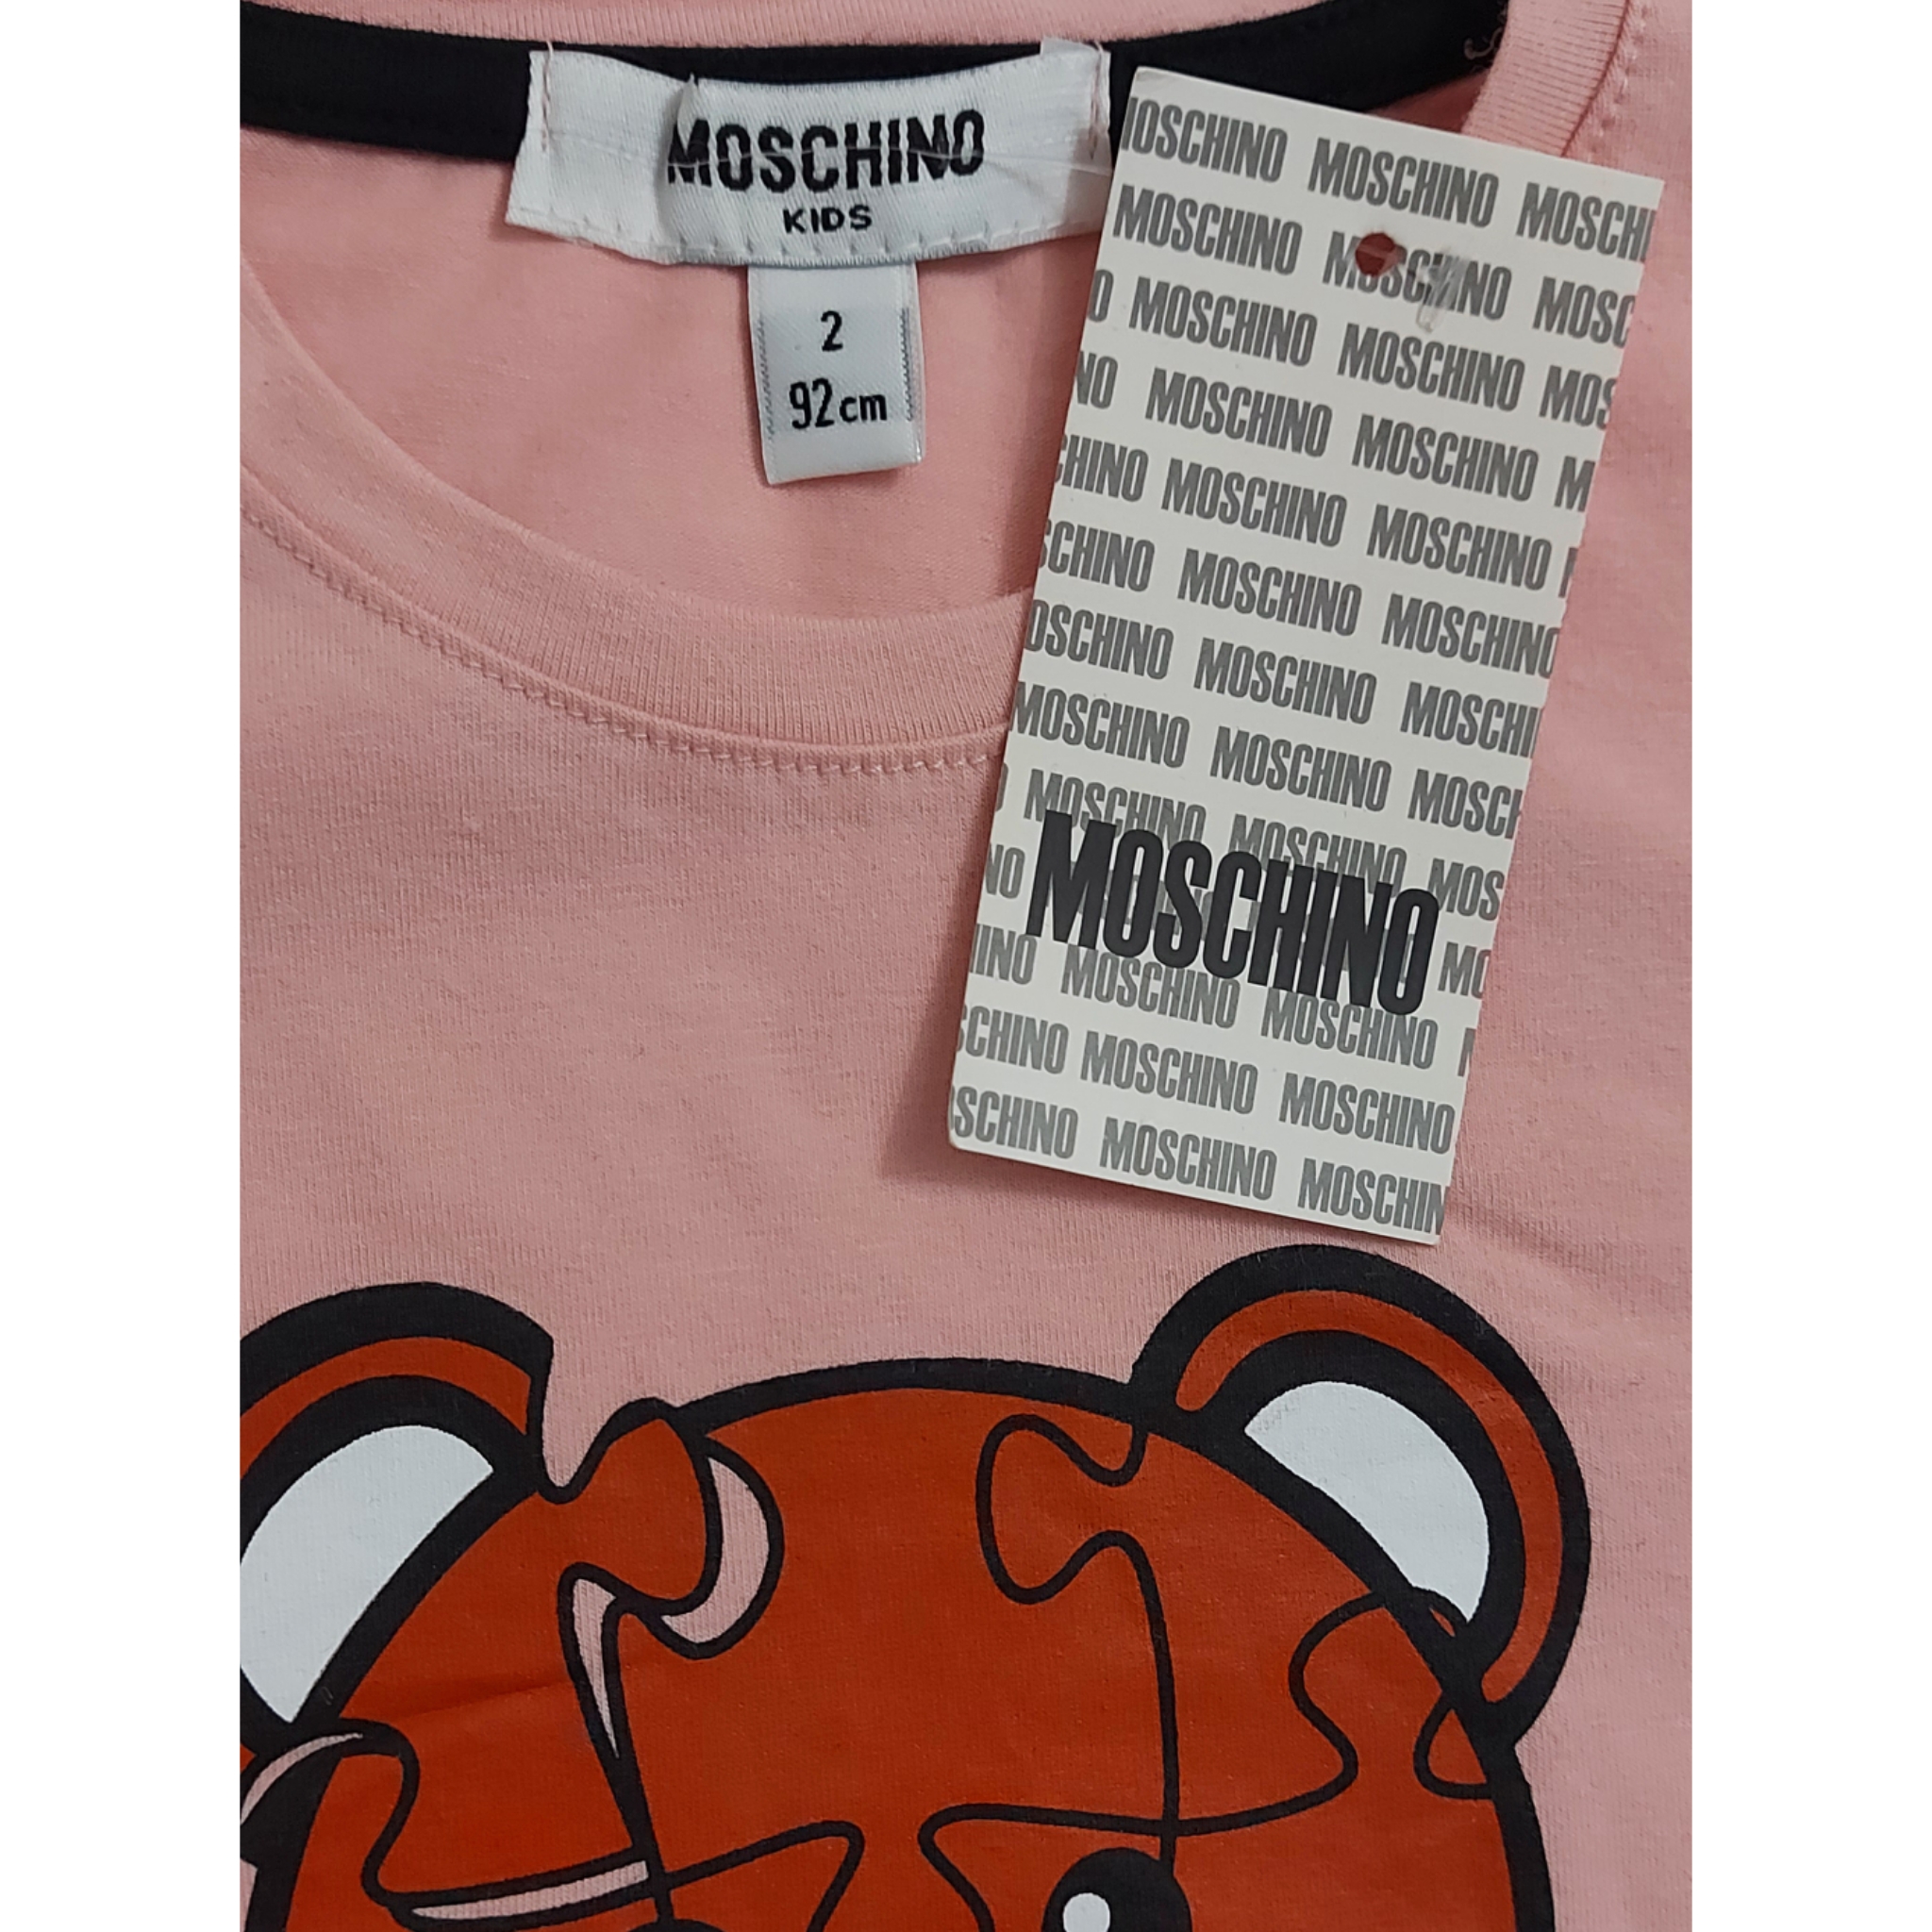 ست تی شرت و شلوارک دخترانه ماسکینو طرح خرس کد 0336 -  - 4